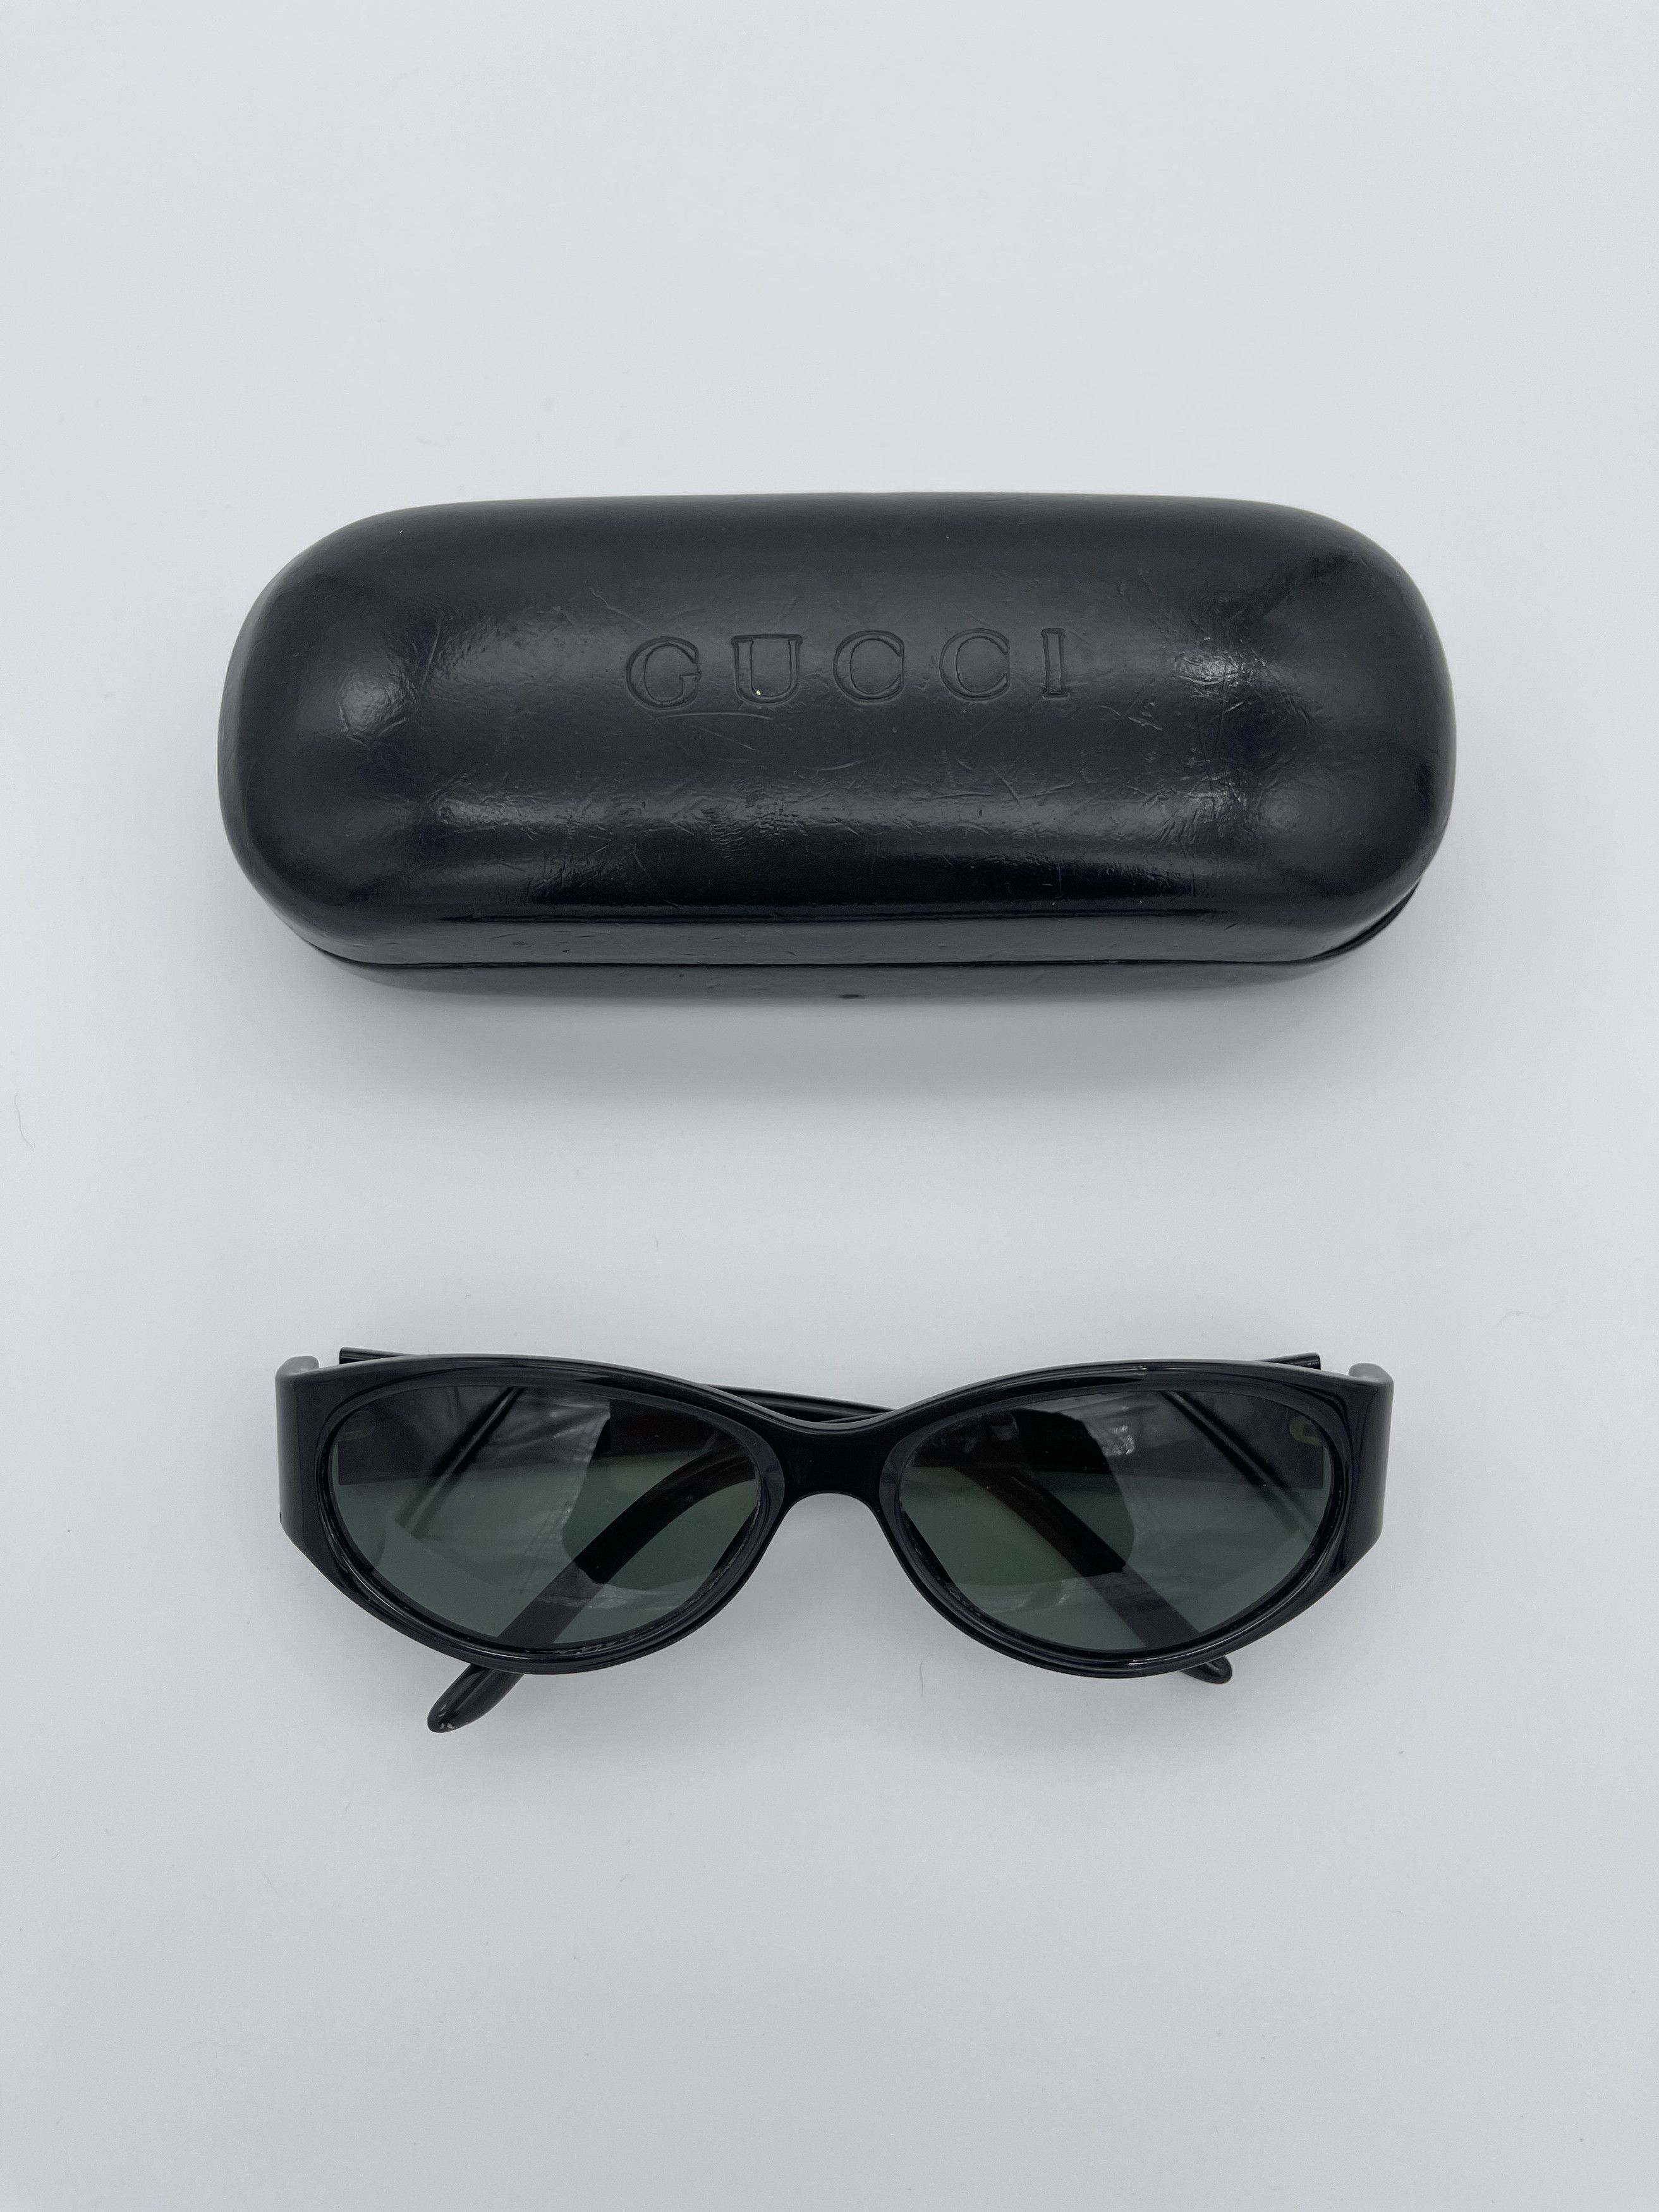 Gucci Rare Vintage Gucci Black Sunglasses Size ONE SIZE - 1 Preview